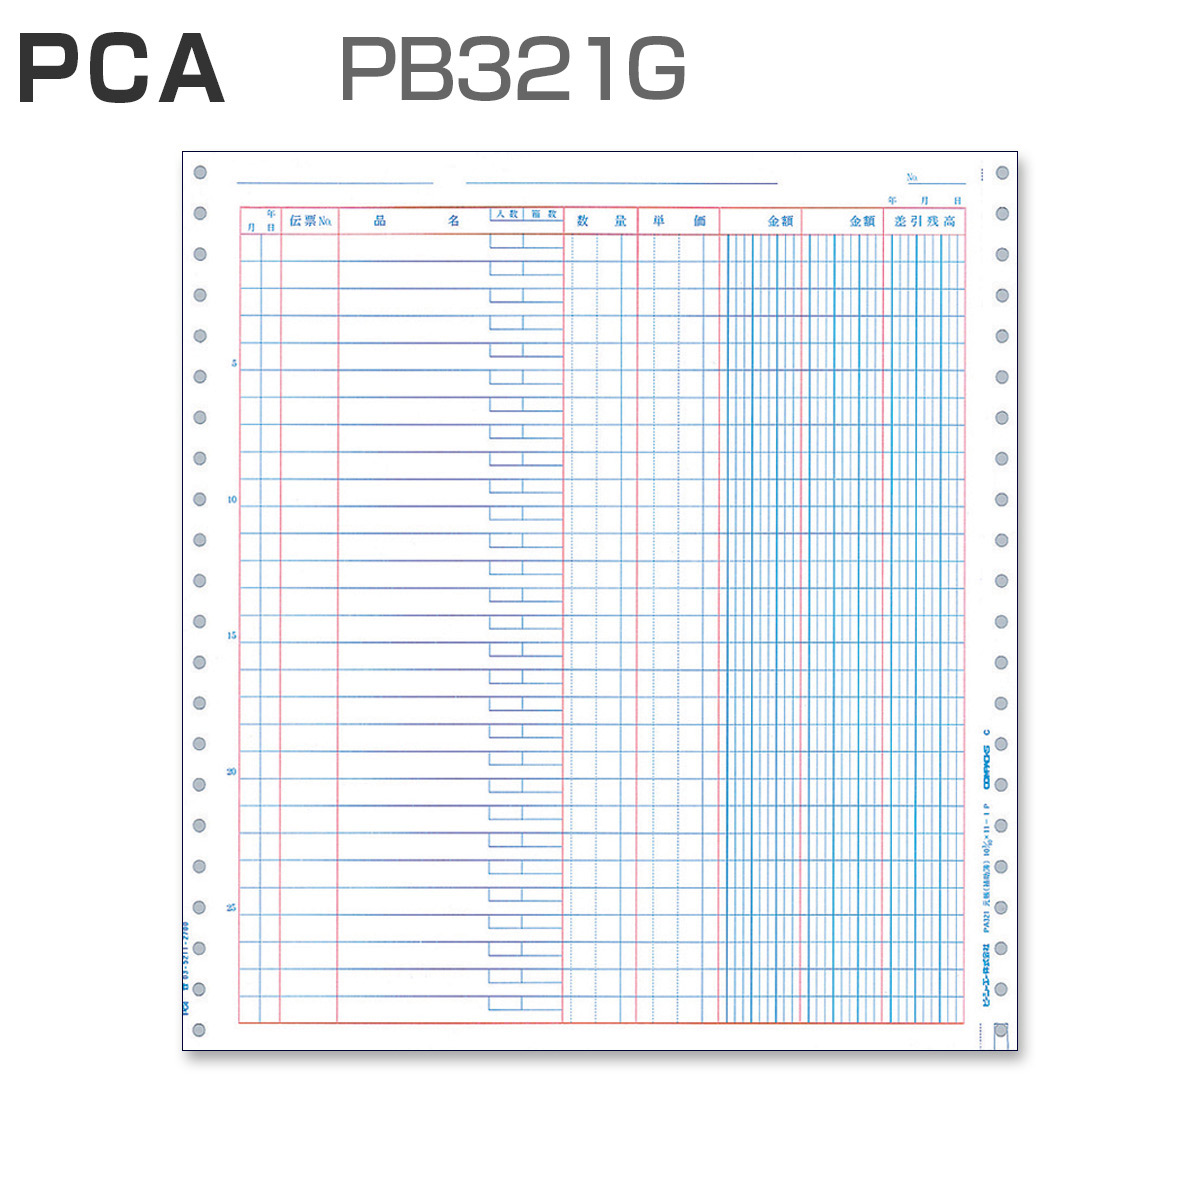 PCA PB321G 元帳 (2,000枚)